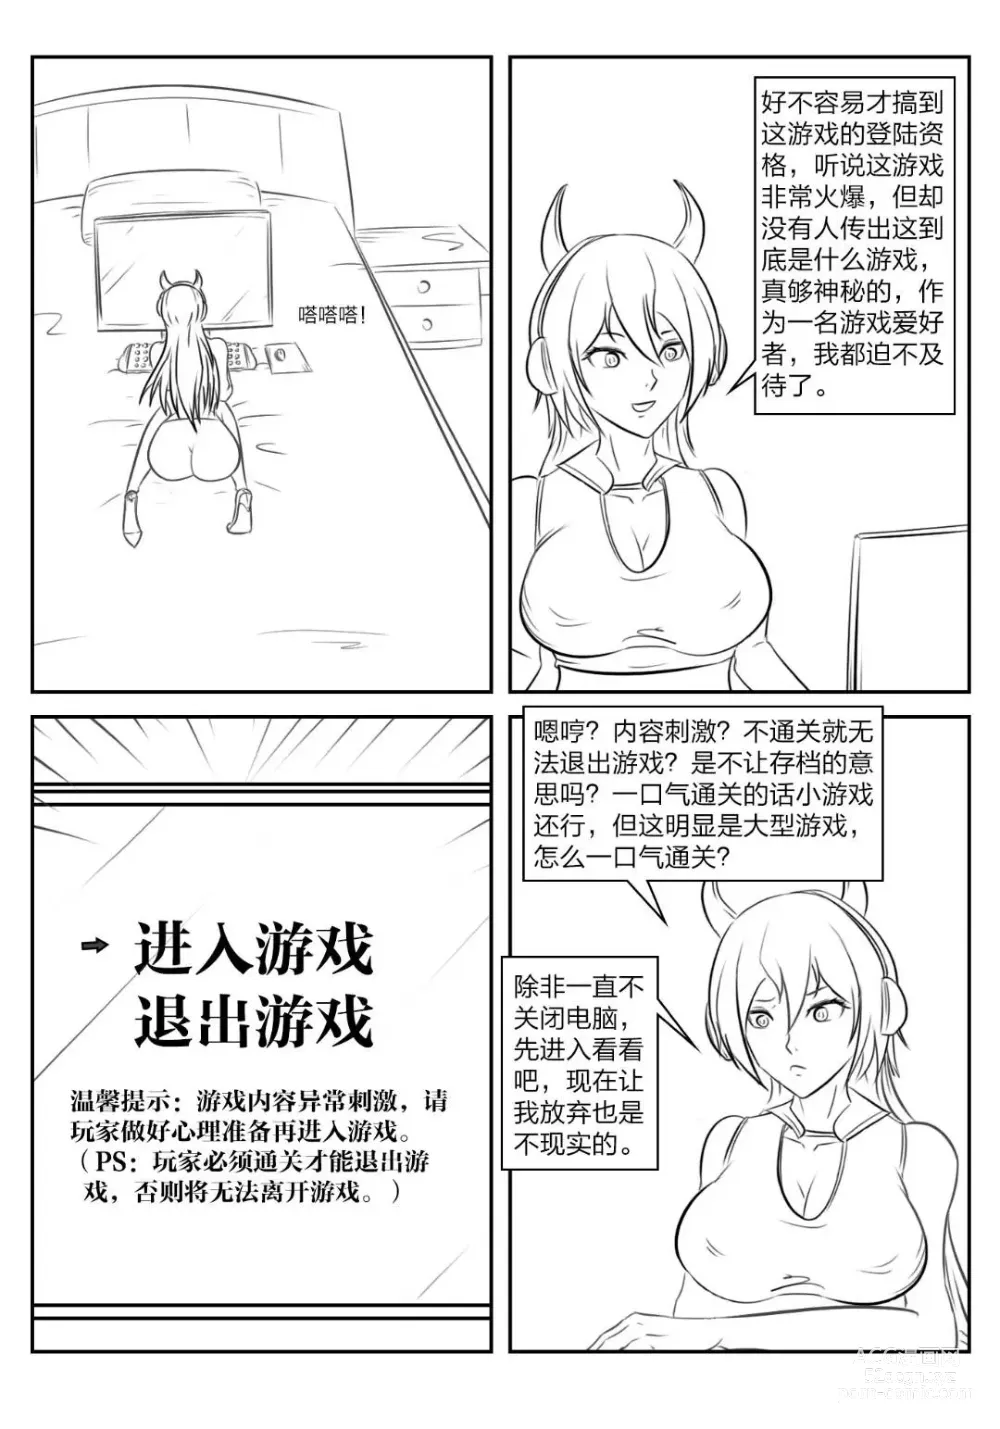 Page 2 of doujinshi 《被困游戏世界》